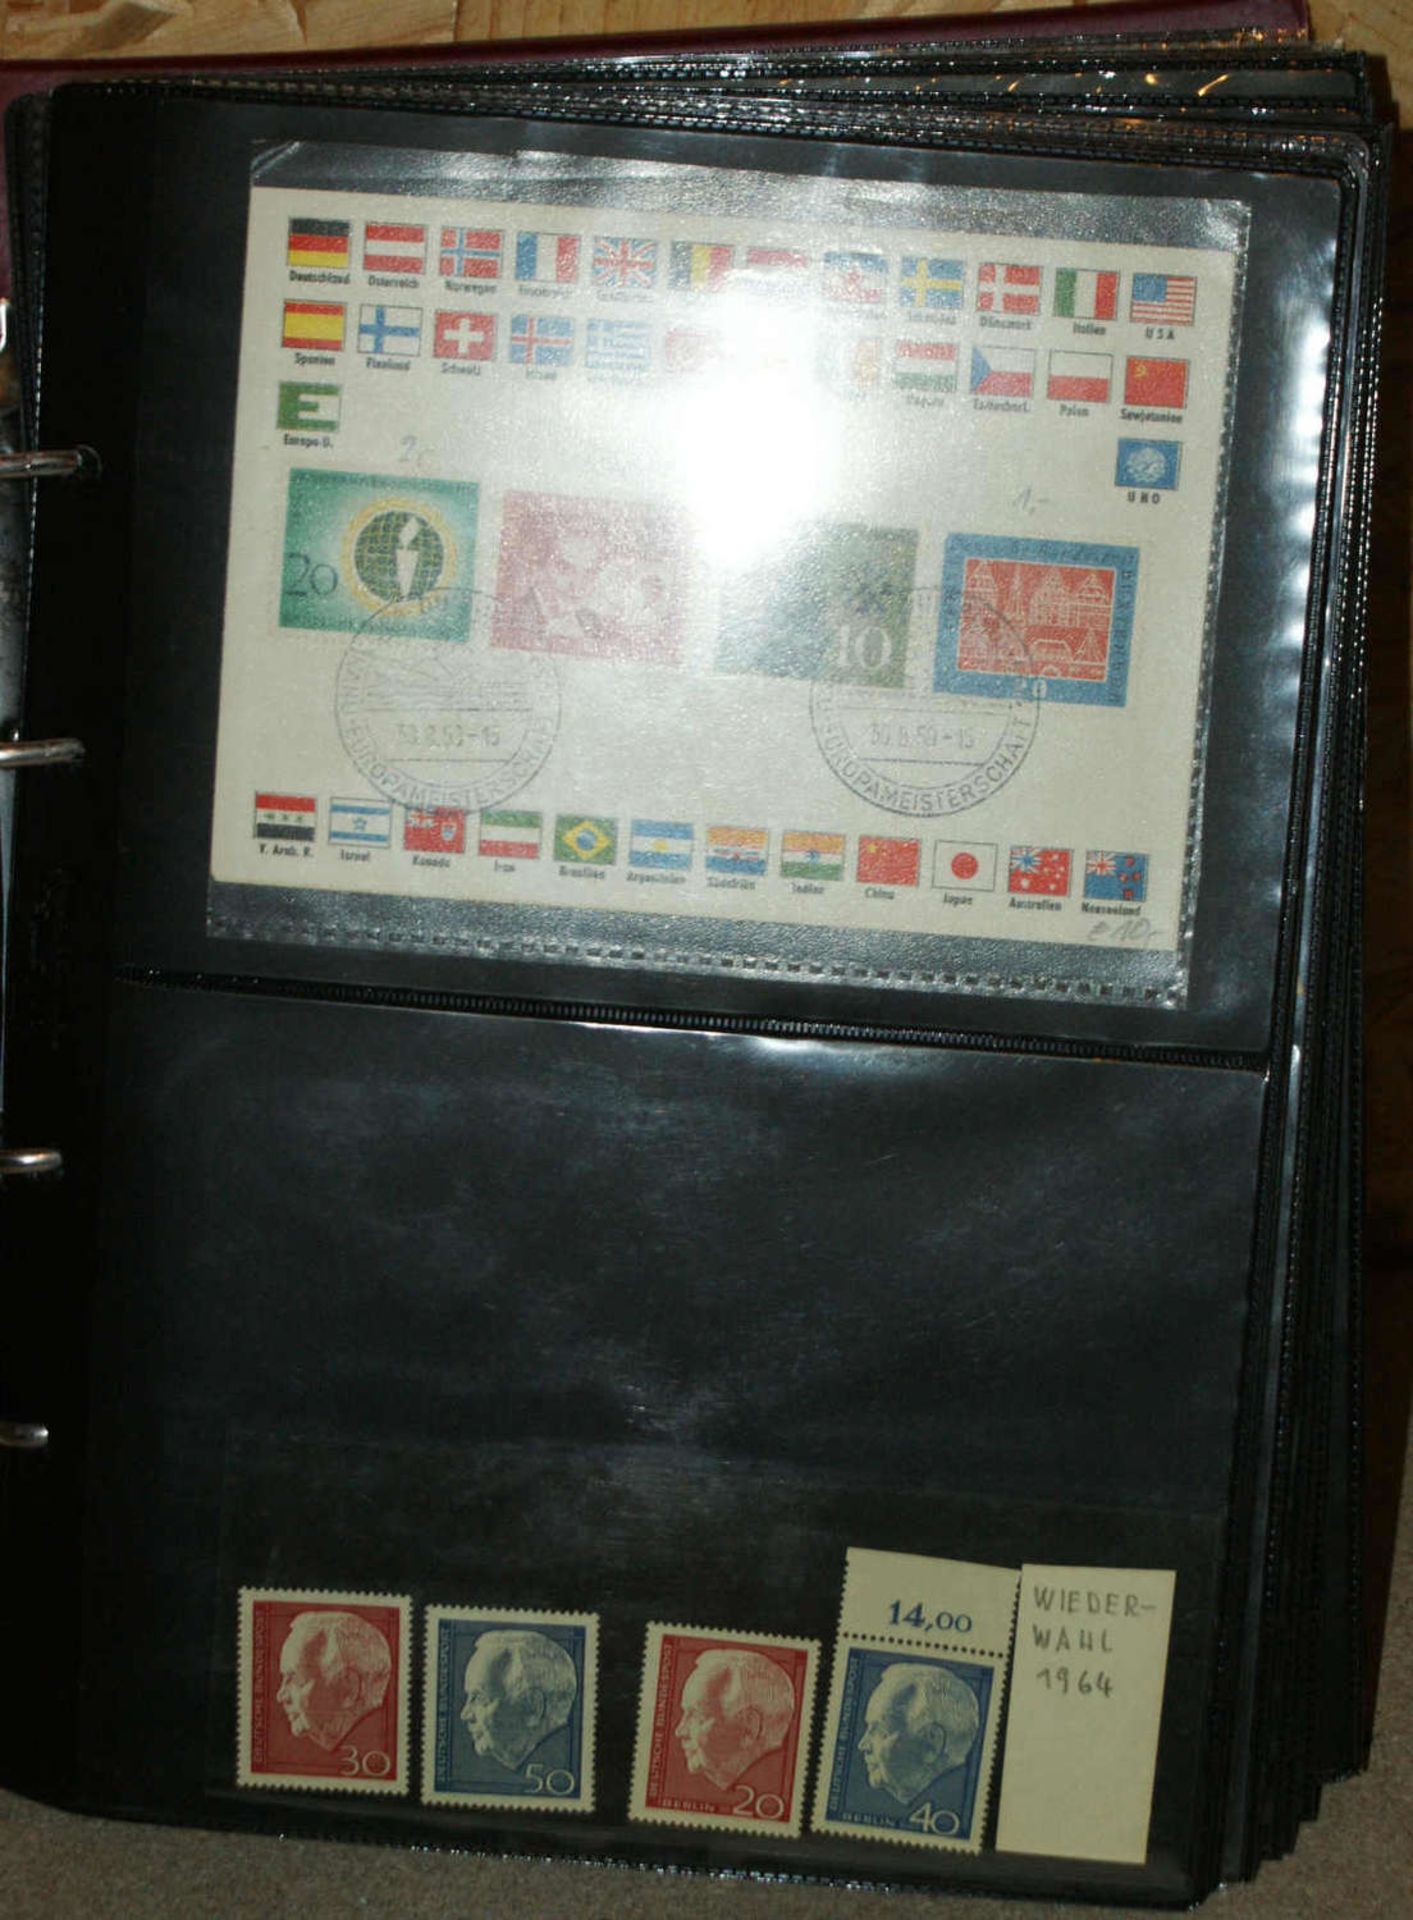 Lot Briefmarken, dabei viele Ersttagsbriefe DDR, Jahressammlung BRD, etc. Interessantes Los. - Bild 3 aus 3